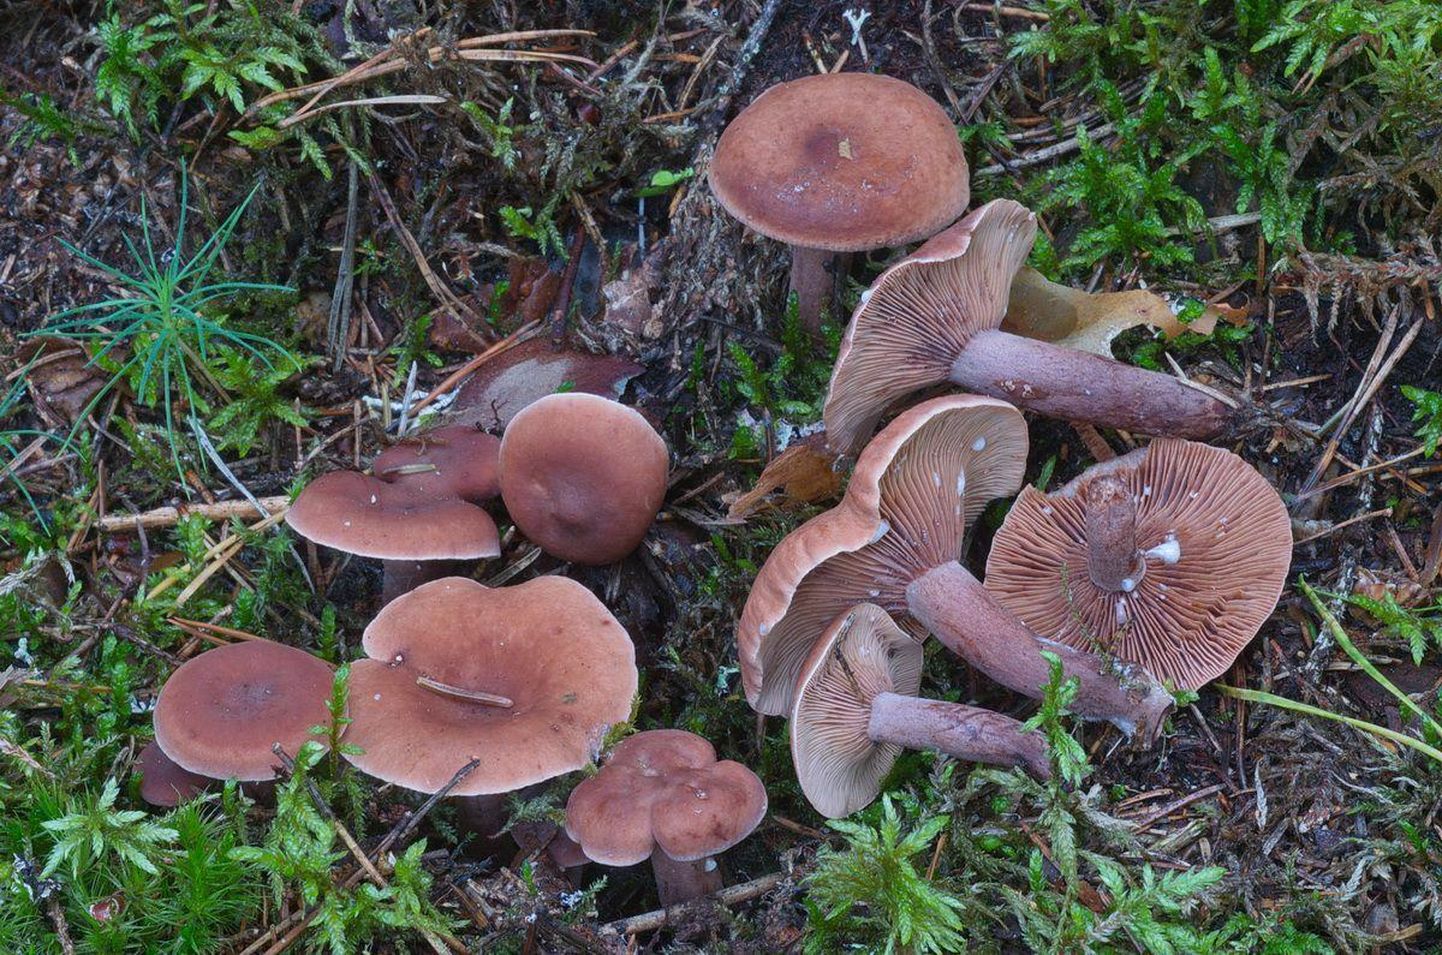 Kamperriisikas on väike seen, mille kübara läbimõõt on alla viie sentimeetri. Värvus on tume-punakaspruun kuni mustjaspruun ning seene piimmahl on muutumatult valge.